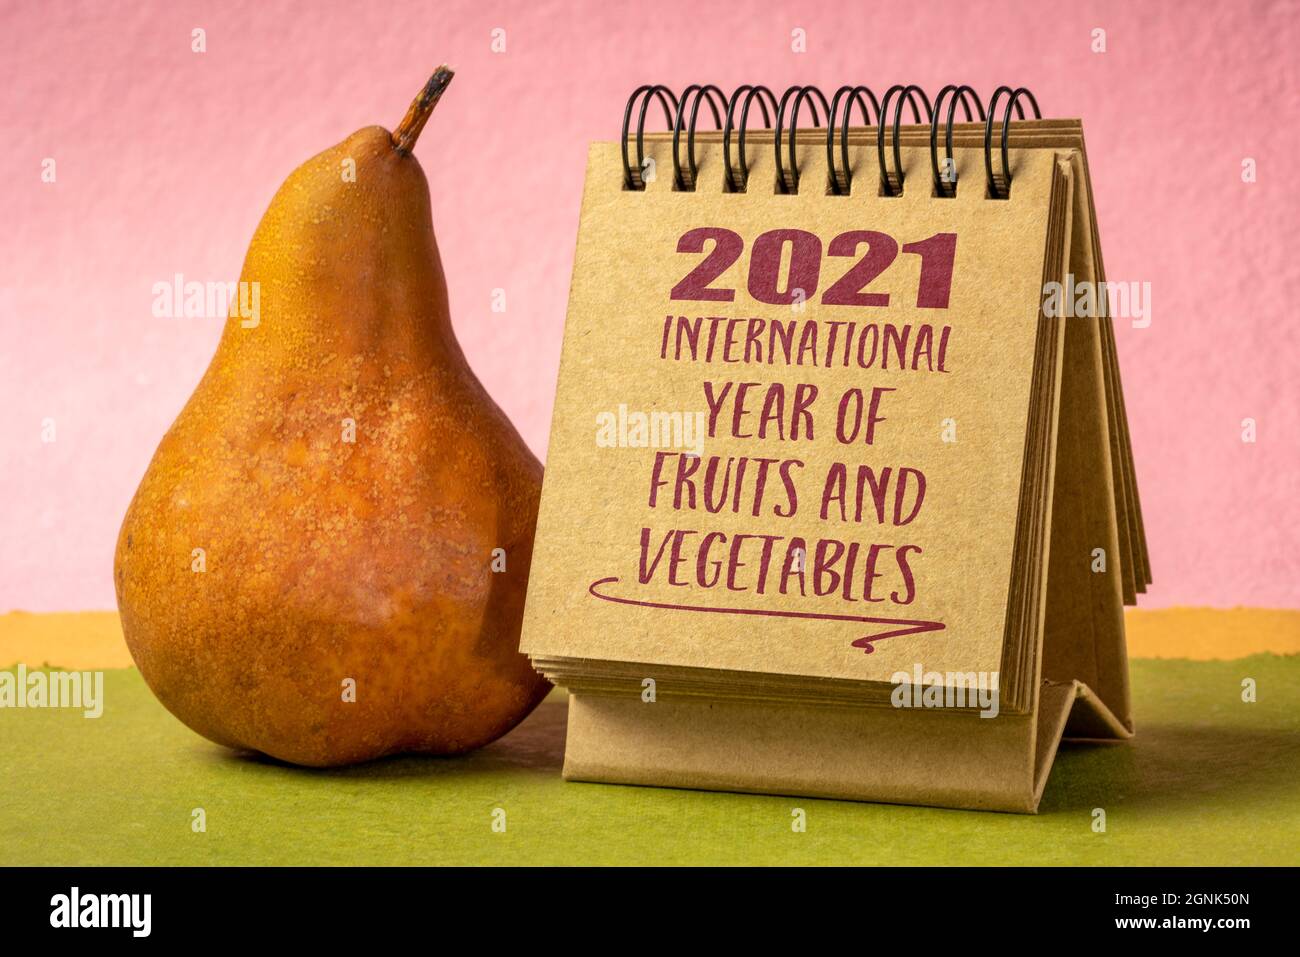 2021 Internationales Jahr der Früchte und Gemüse - Handschrift in einem spiralförmigen Desktop-Kalender mit einer Birne, die das Bewusstsein für die wichtige Rolle der f Stockfoto